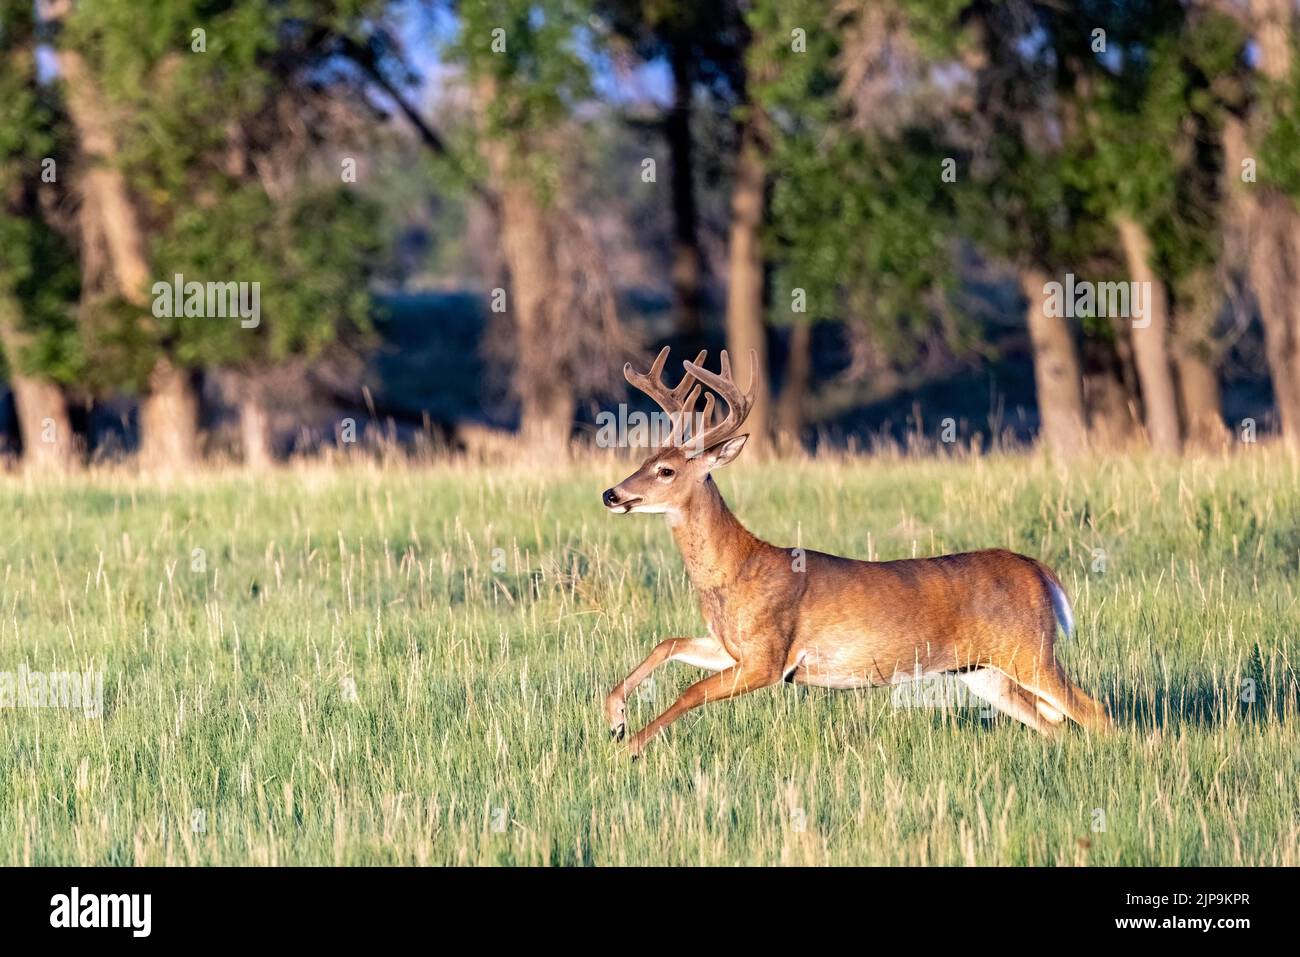 Le cerf de Virginie mâle (Odocoileus virginianus) en course dans la réserve naturelle nationale de Rocky Mountain Arsenal, Commerce City, près de Denver, Colorado Banque D'Images